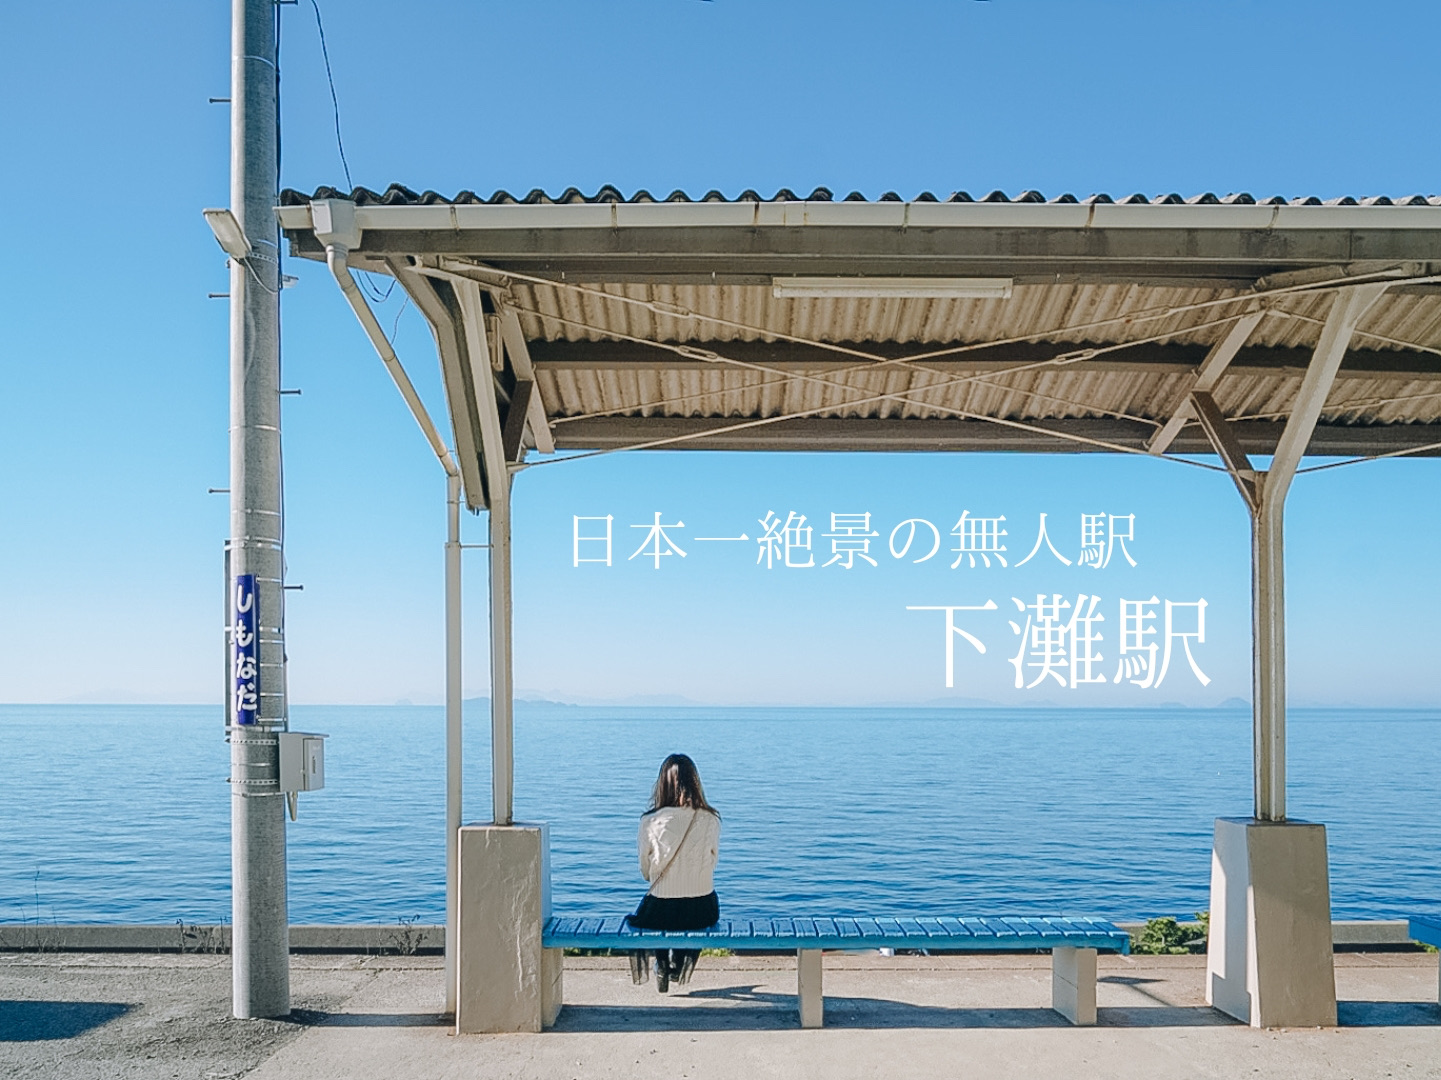 我想下一次!日本最壮观的无人车站“下滩站”可欣赏海景